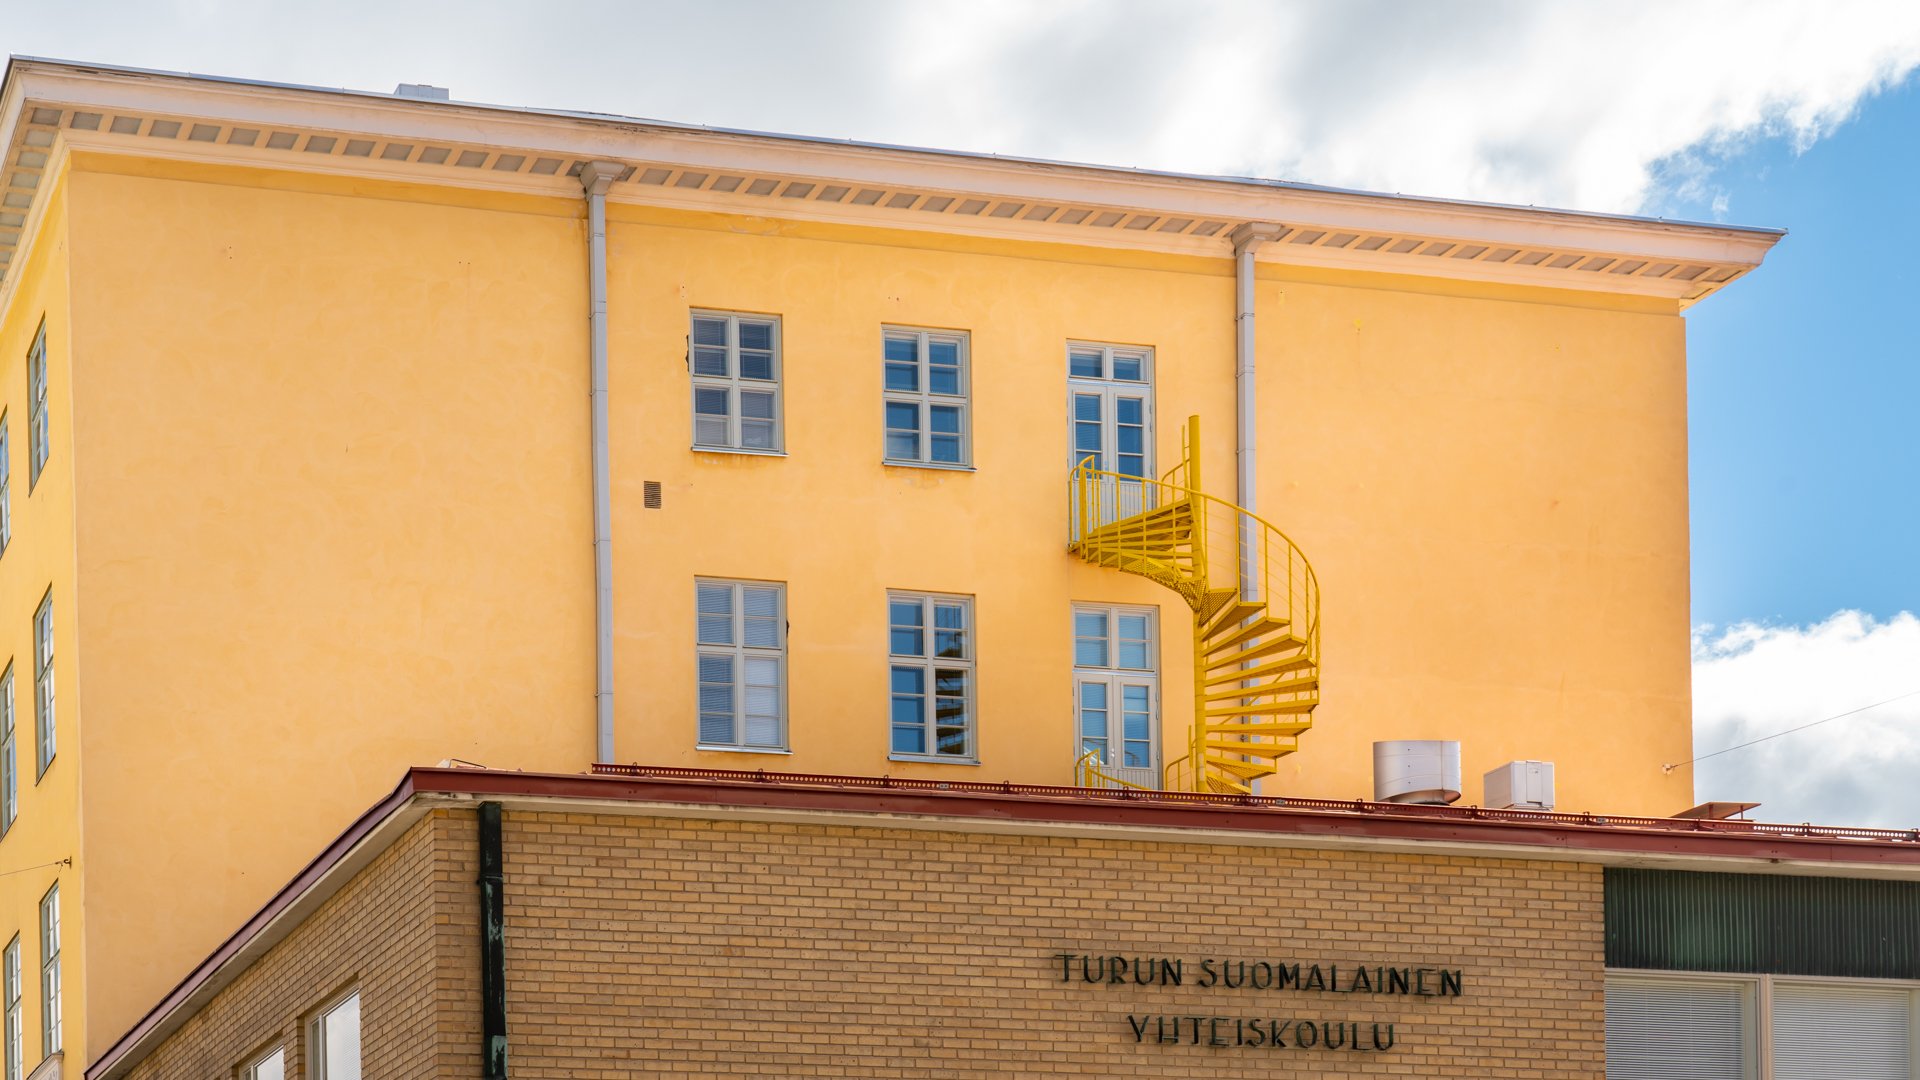 Turun Suomalainen Yhteiskoulu, Turku